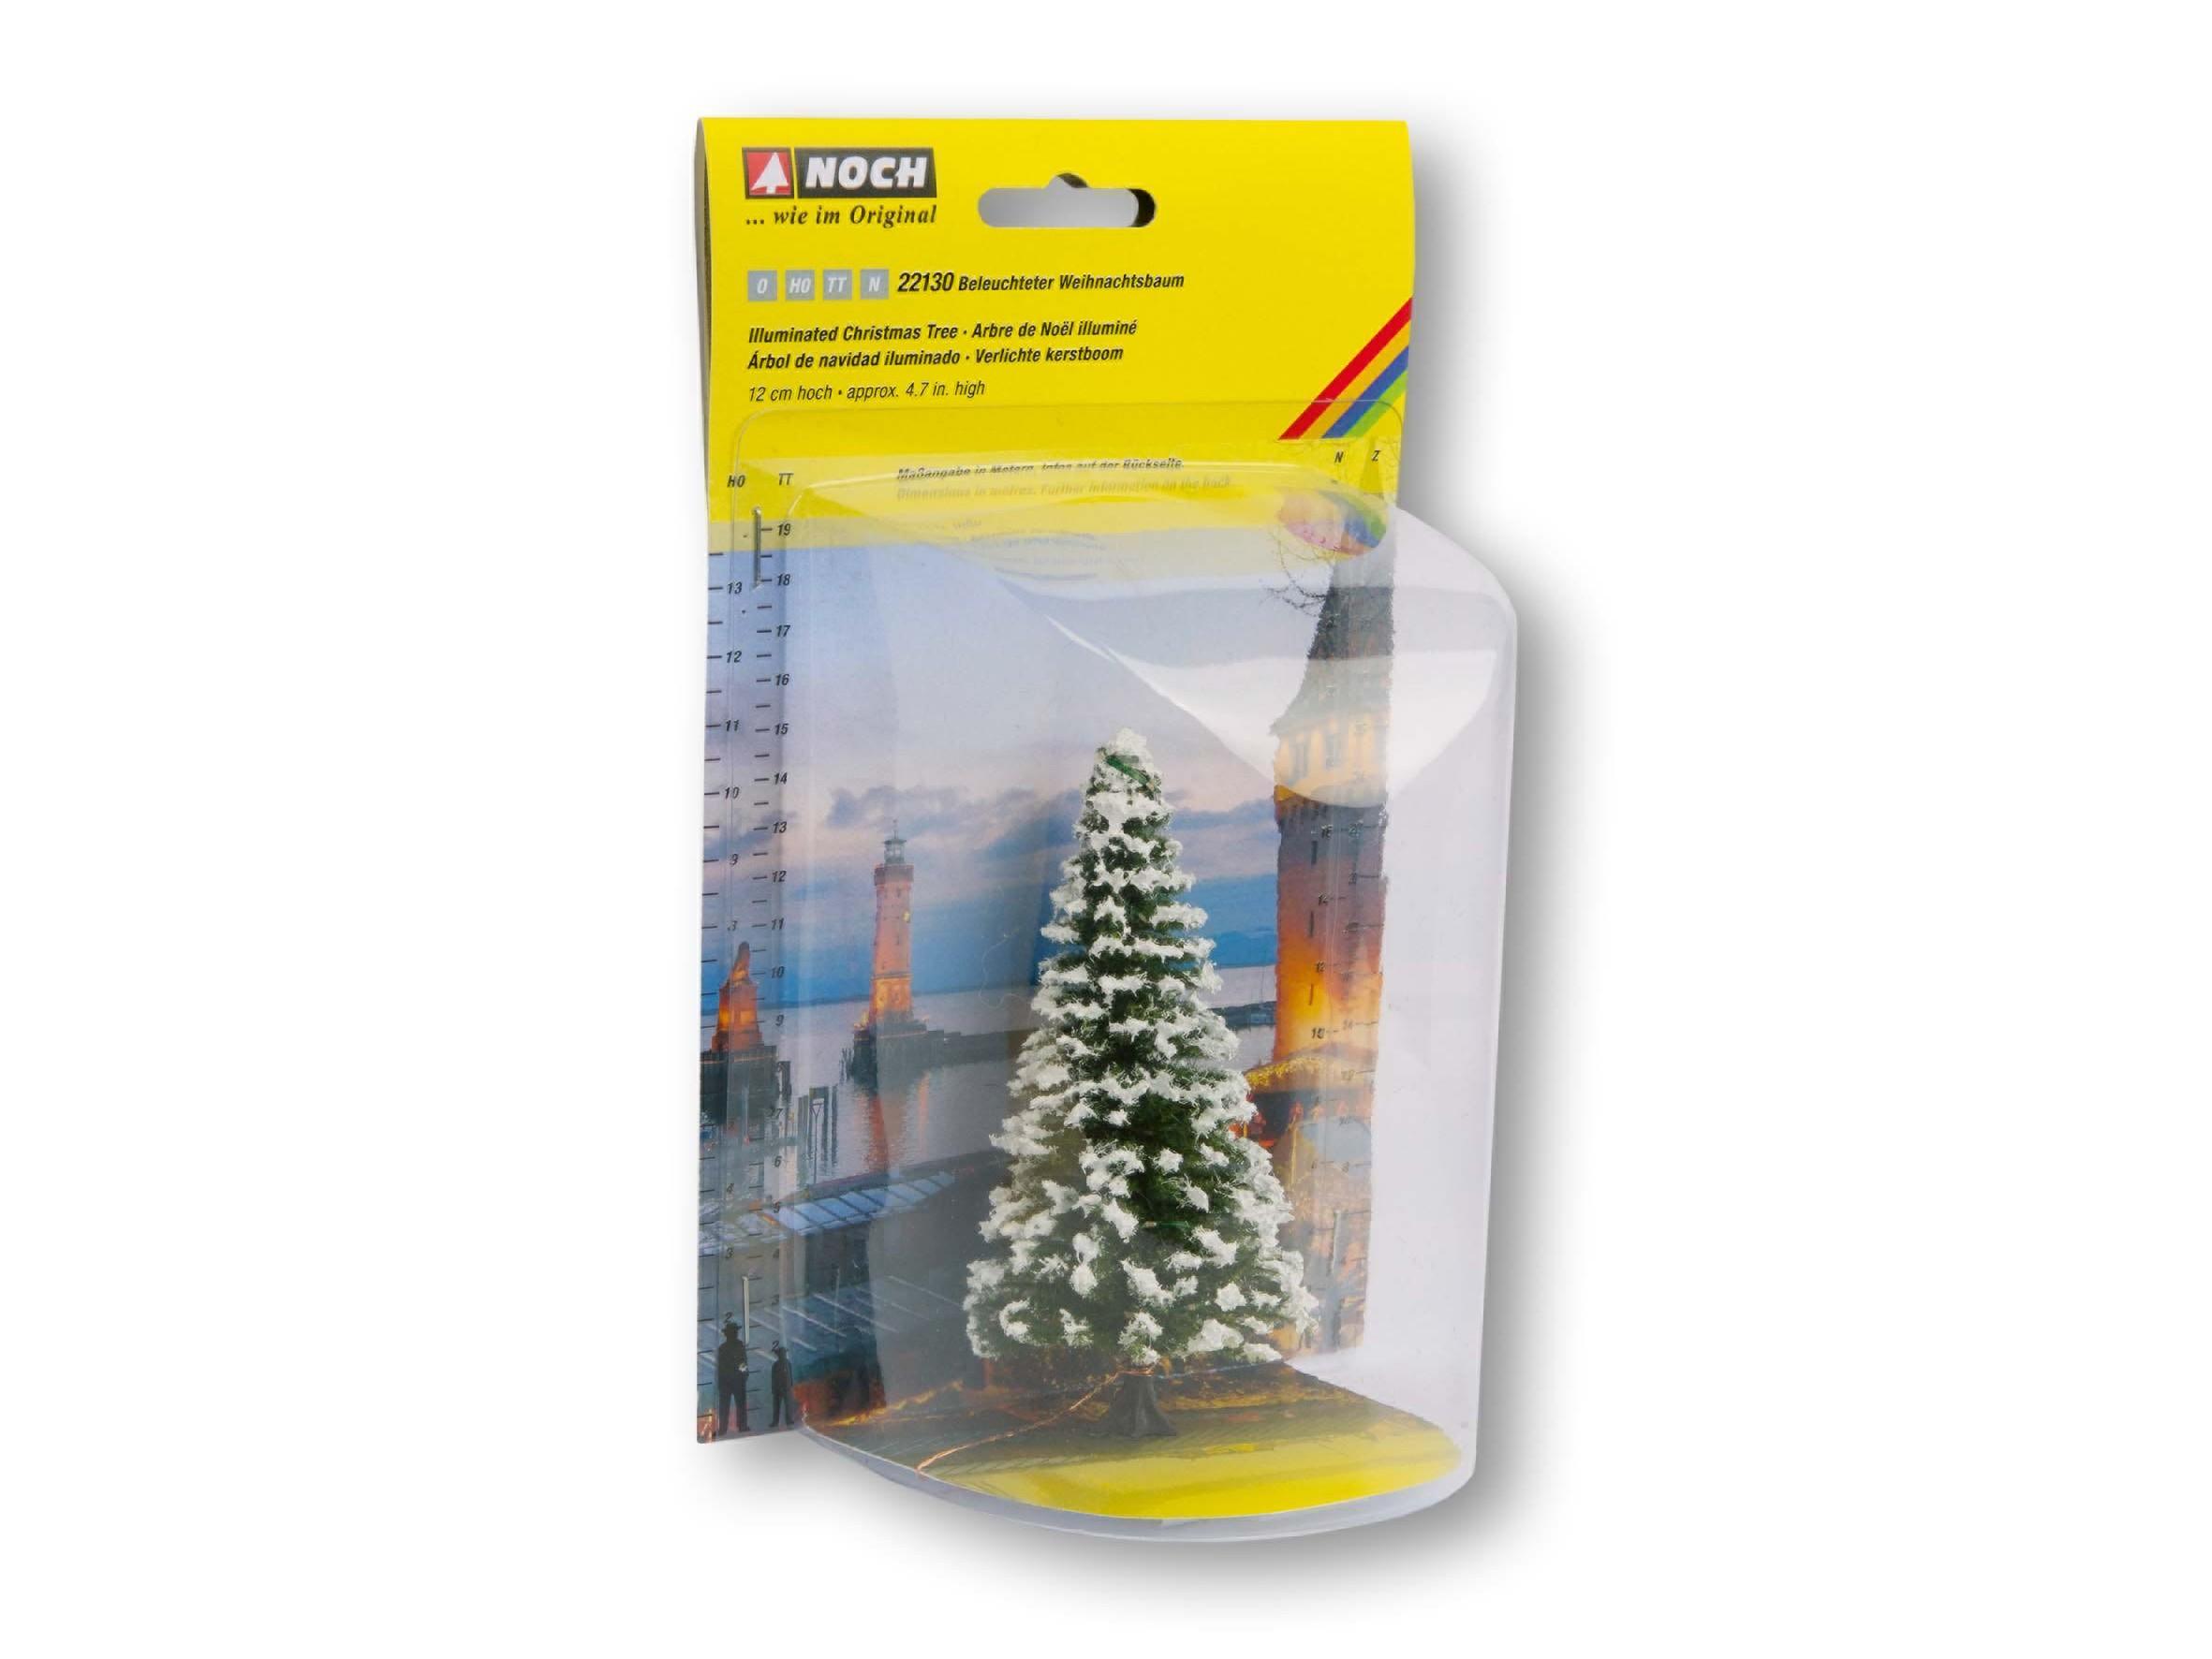 NOCH Beleuchteter Weihnachtsbaum, verschneit, mit 30 LEDs, 12 cm hoch